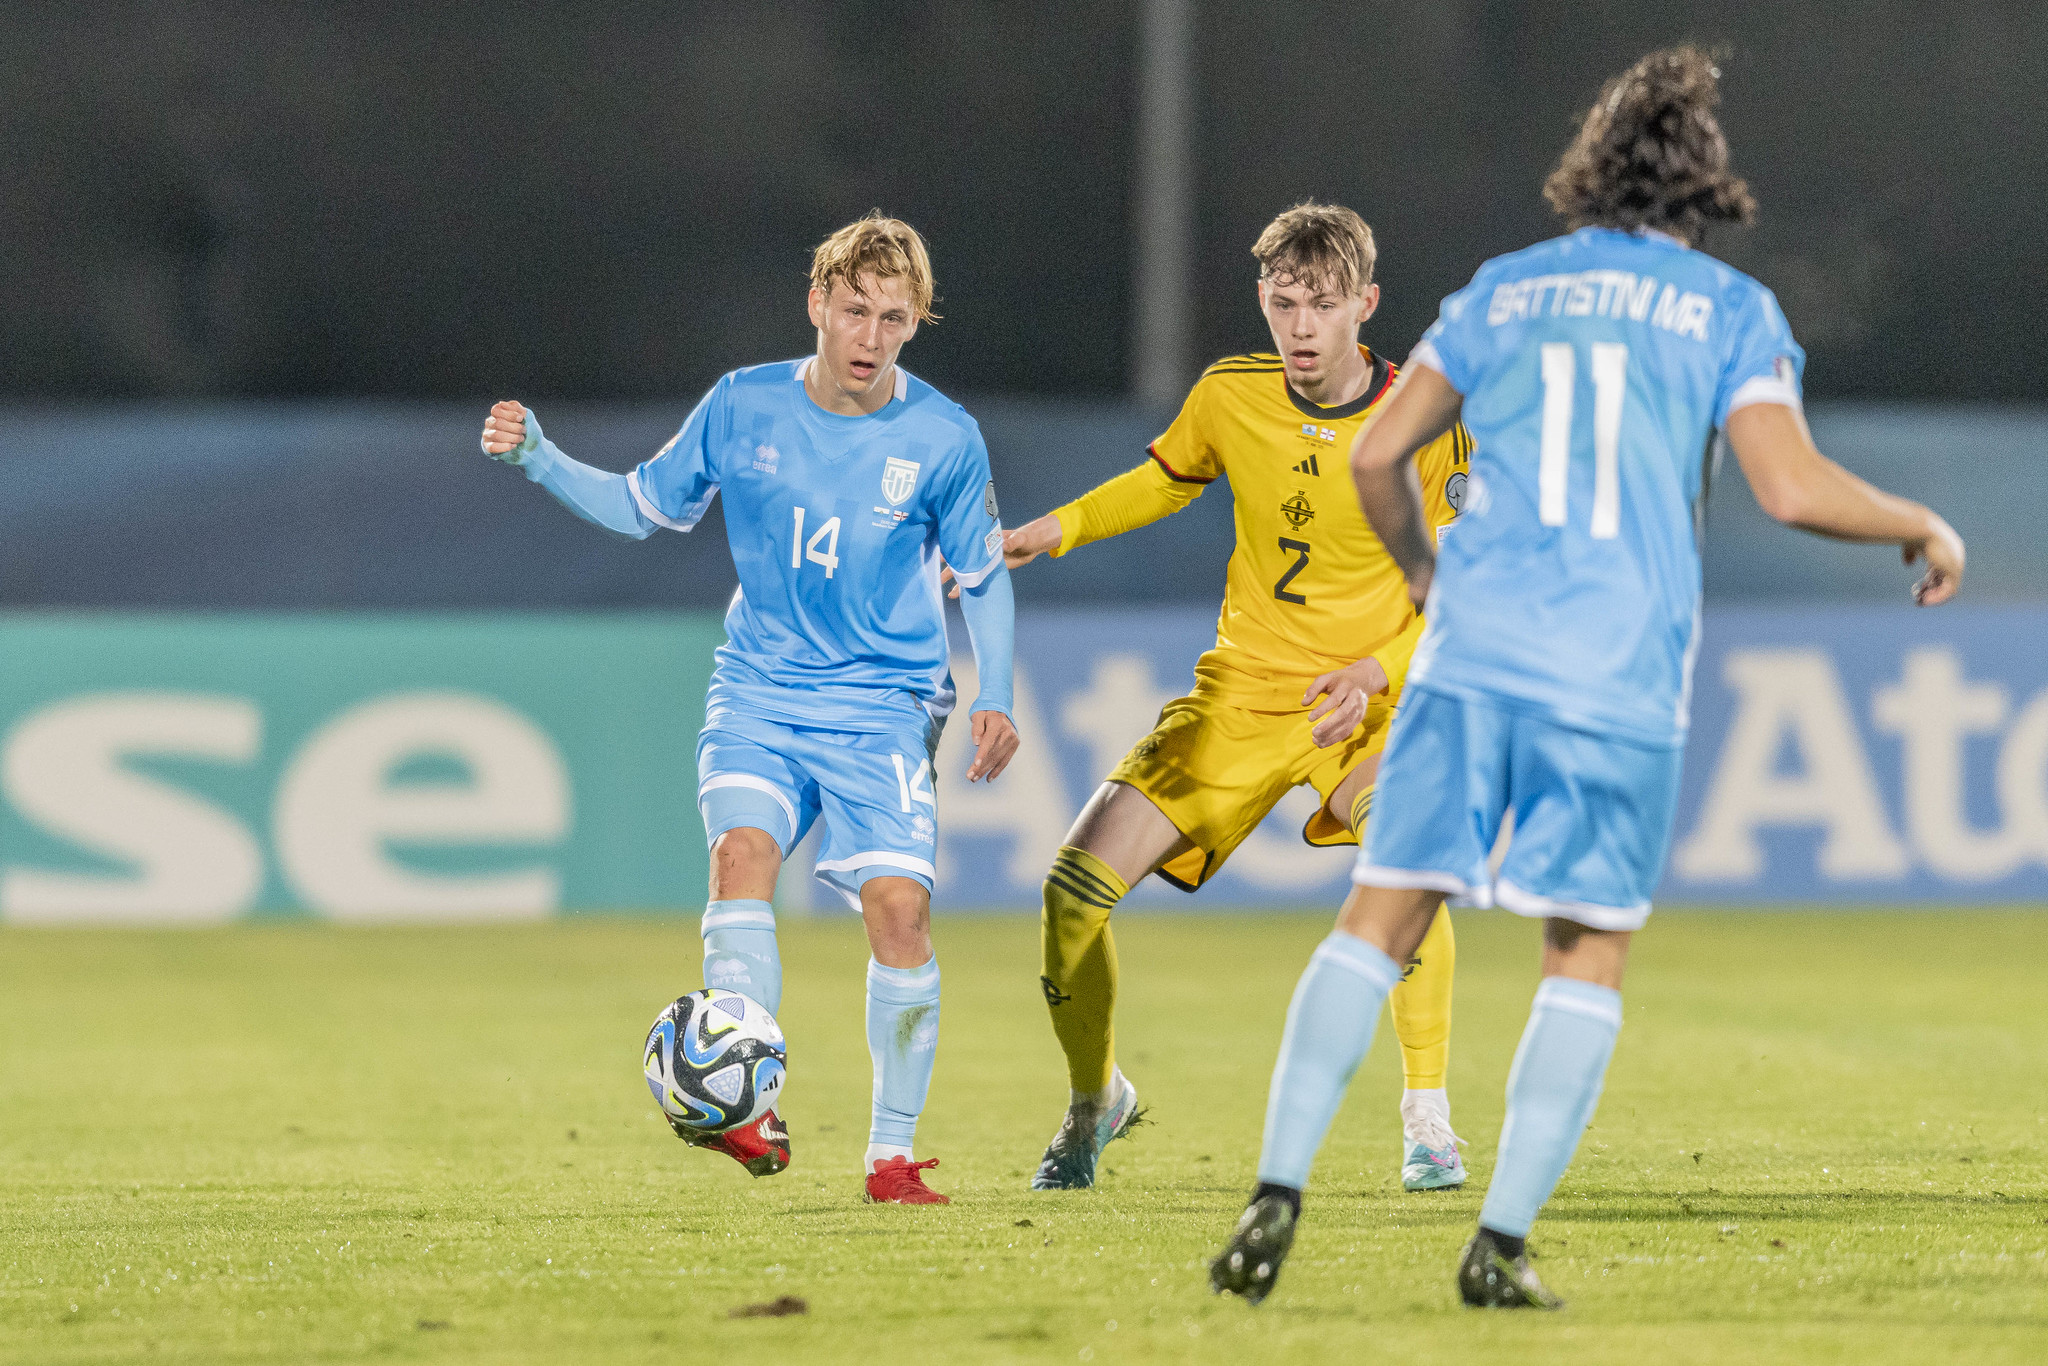 Calcio, biglietto gratuito e servizio navetta per San Marino-Kazakhstan a Parma